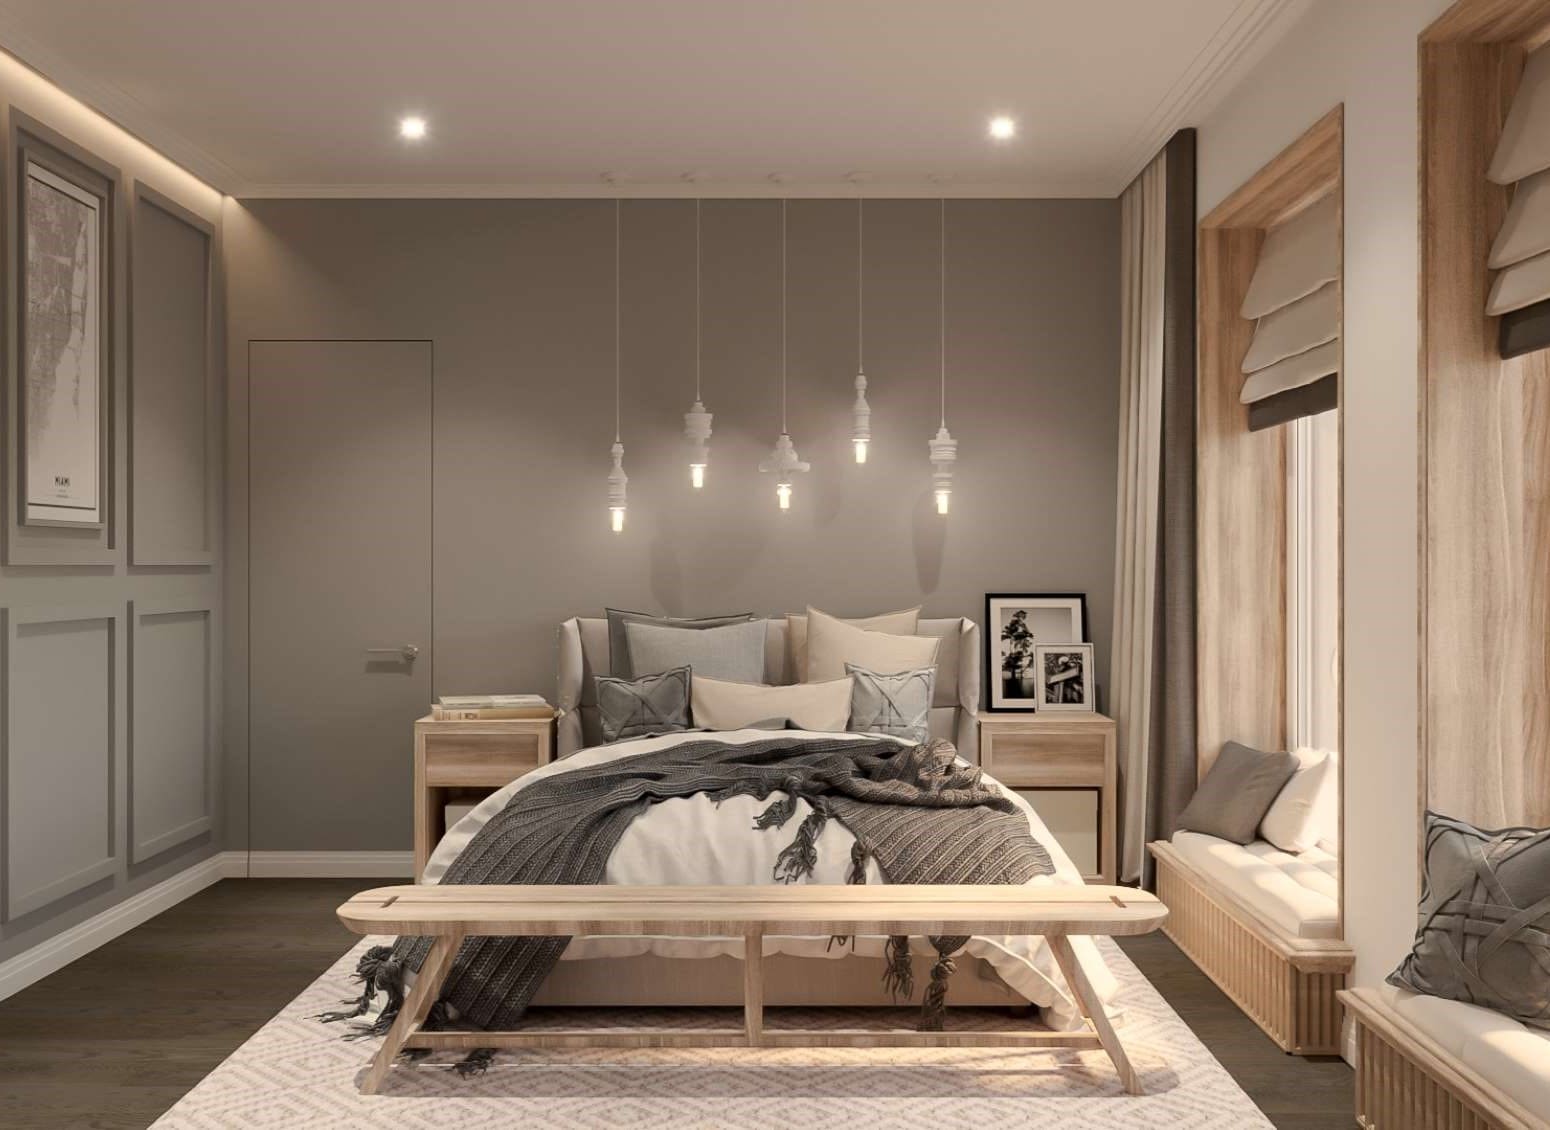 Come scegliere le lampade da comodino e illuminare la camera da letto